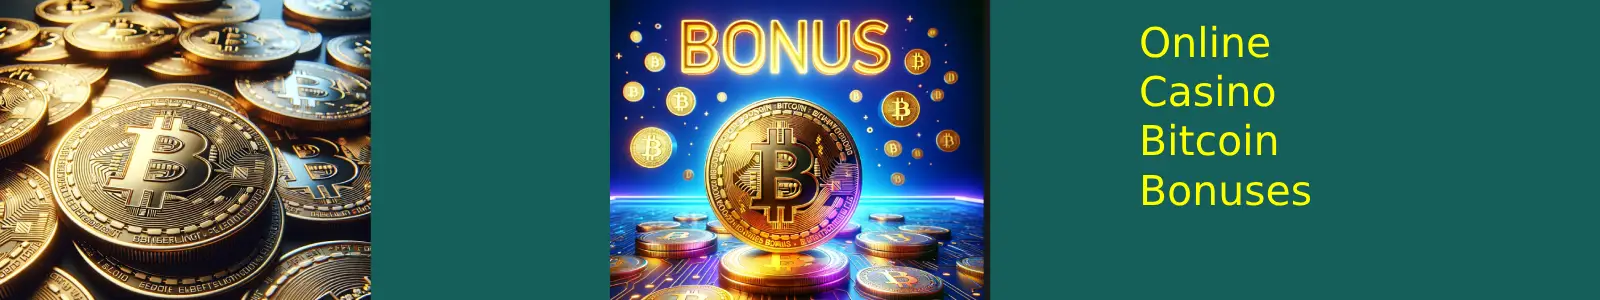 Bonuses For Bitcoin